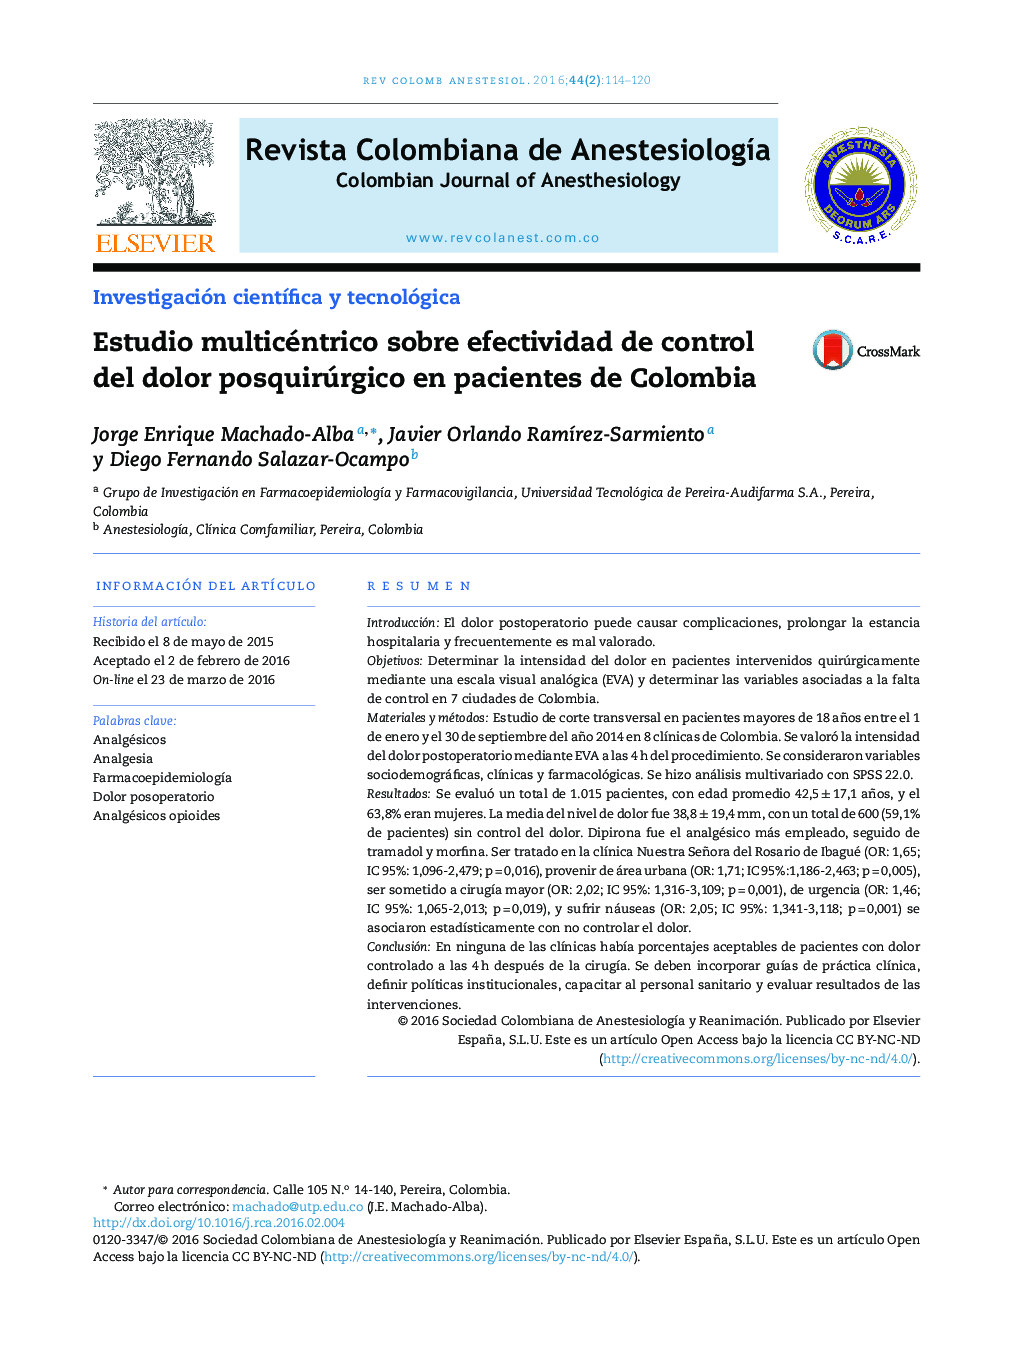 Estudio multicéntrico sobre efectividad de control del dolor posquirúrgico en pacientes de Colombia